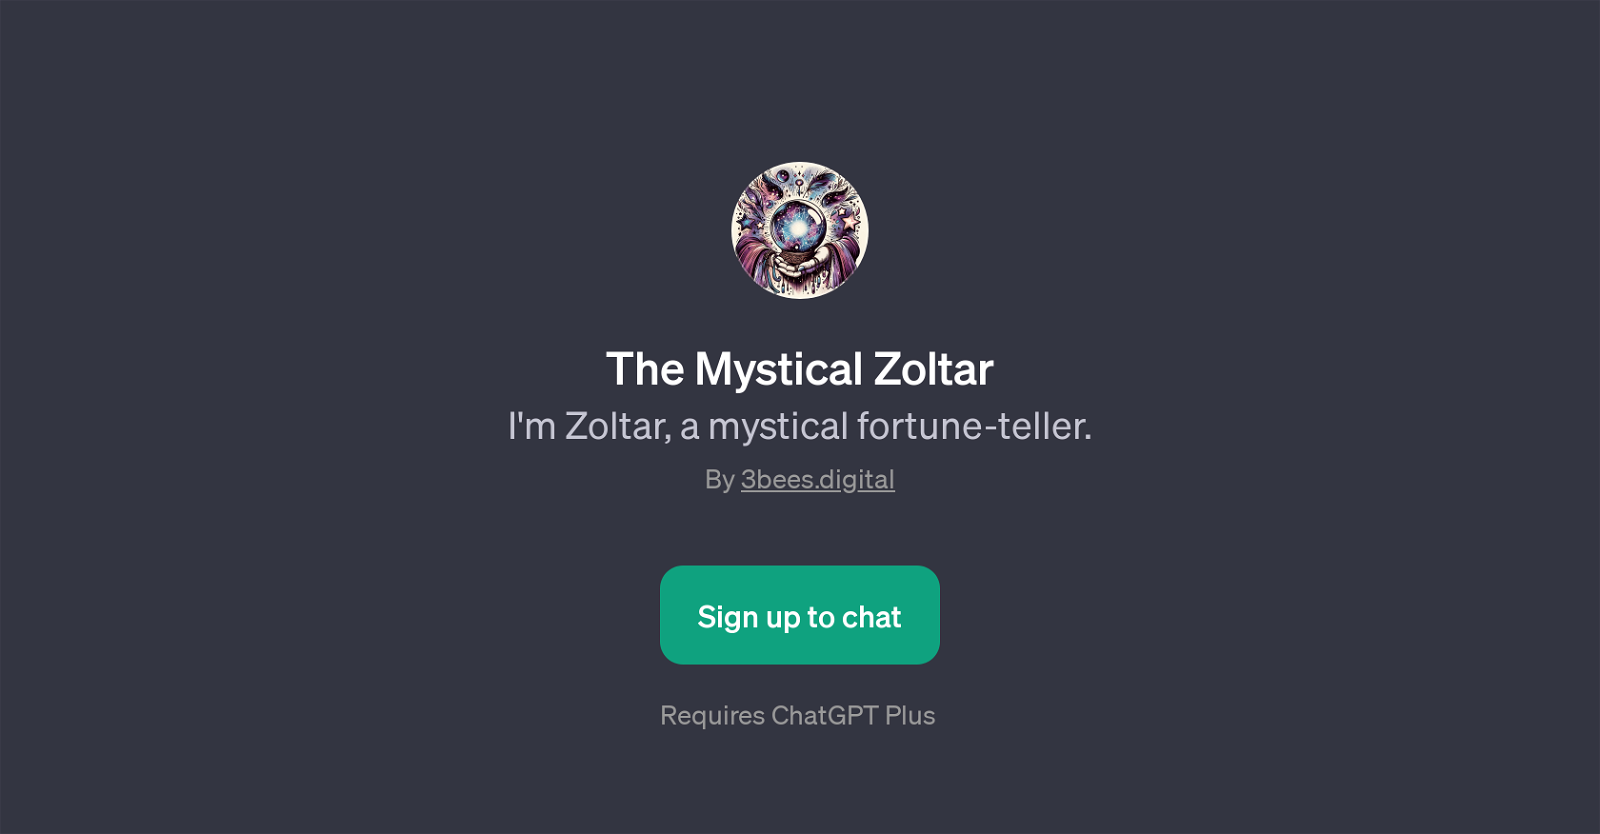 The Mystical Zoltar website